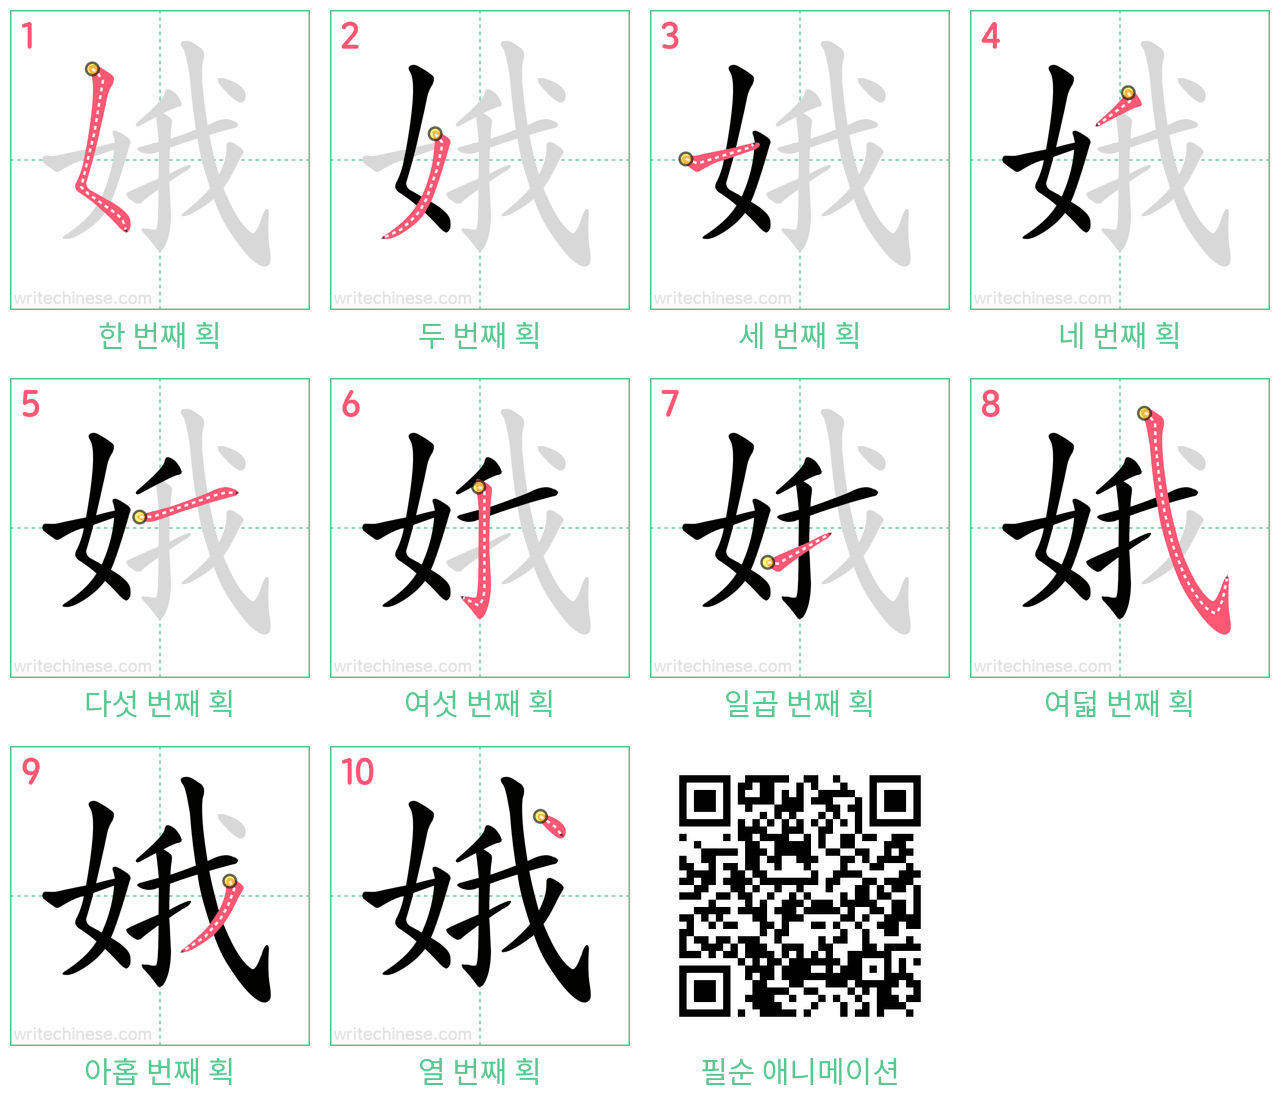 娥 step-by-step stroke order diagrams